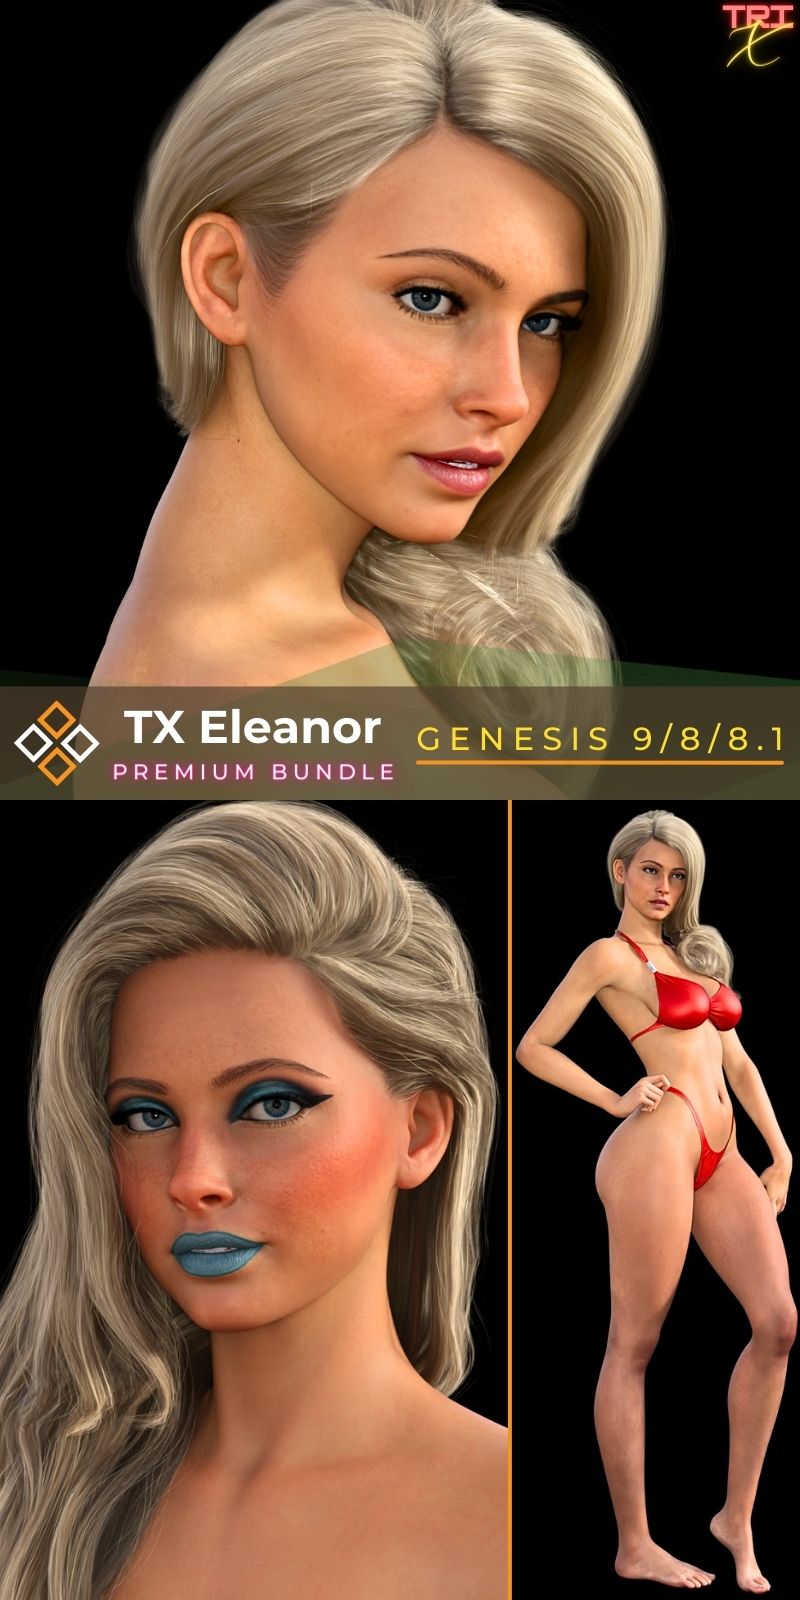 TX Eleanor for G9/8/8.1 Premium Bundle